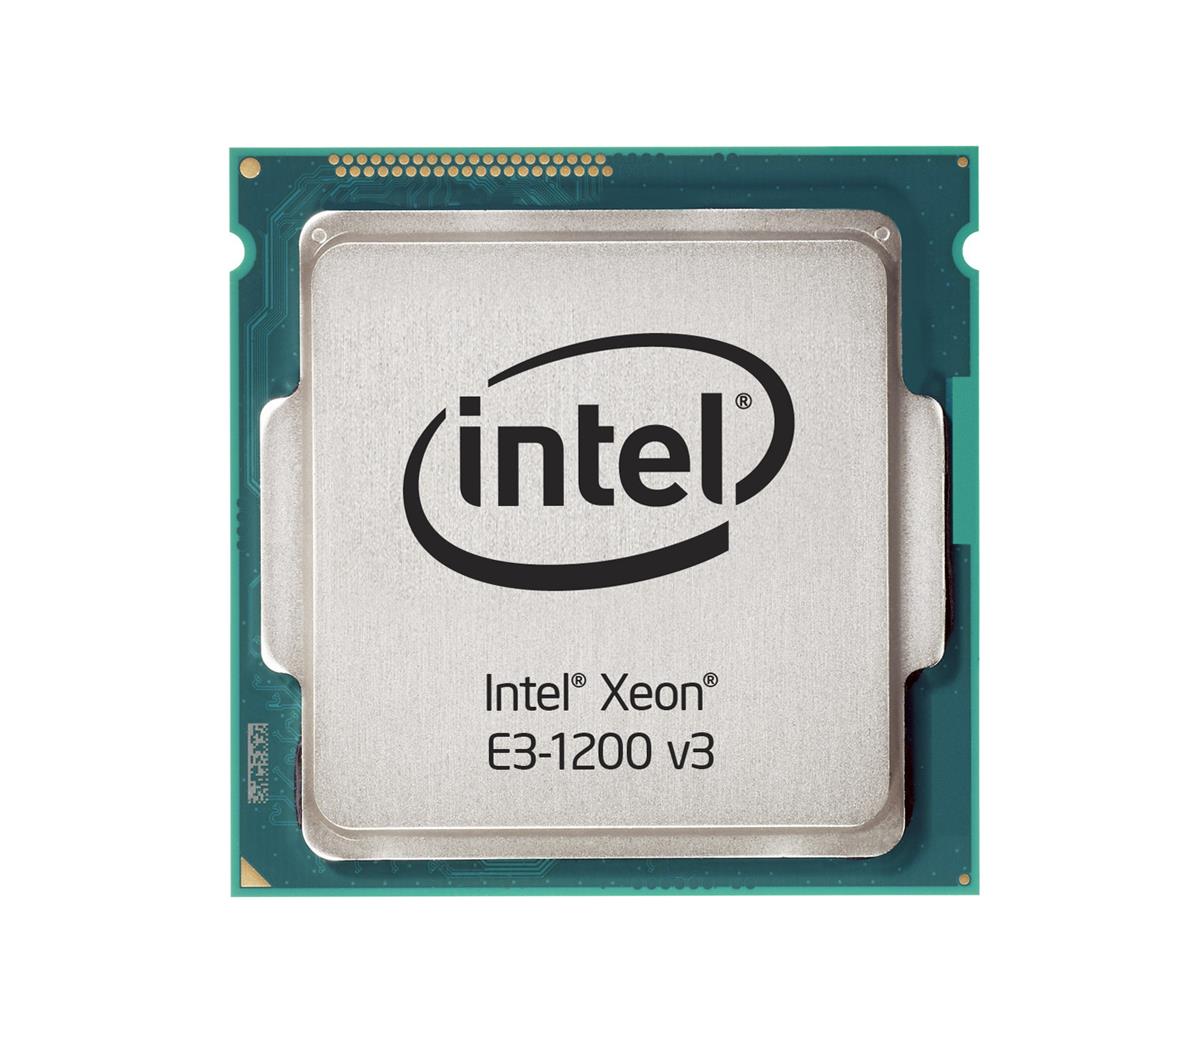 SR1R2 Intel Xeon E3-1281 v3 Quad-Core 3.70GHz 5.00GT/s DMI2 8MB L3 Cache Socket FCLGA1150 Processor